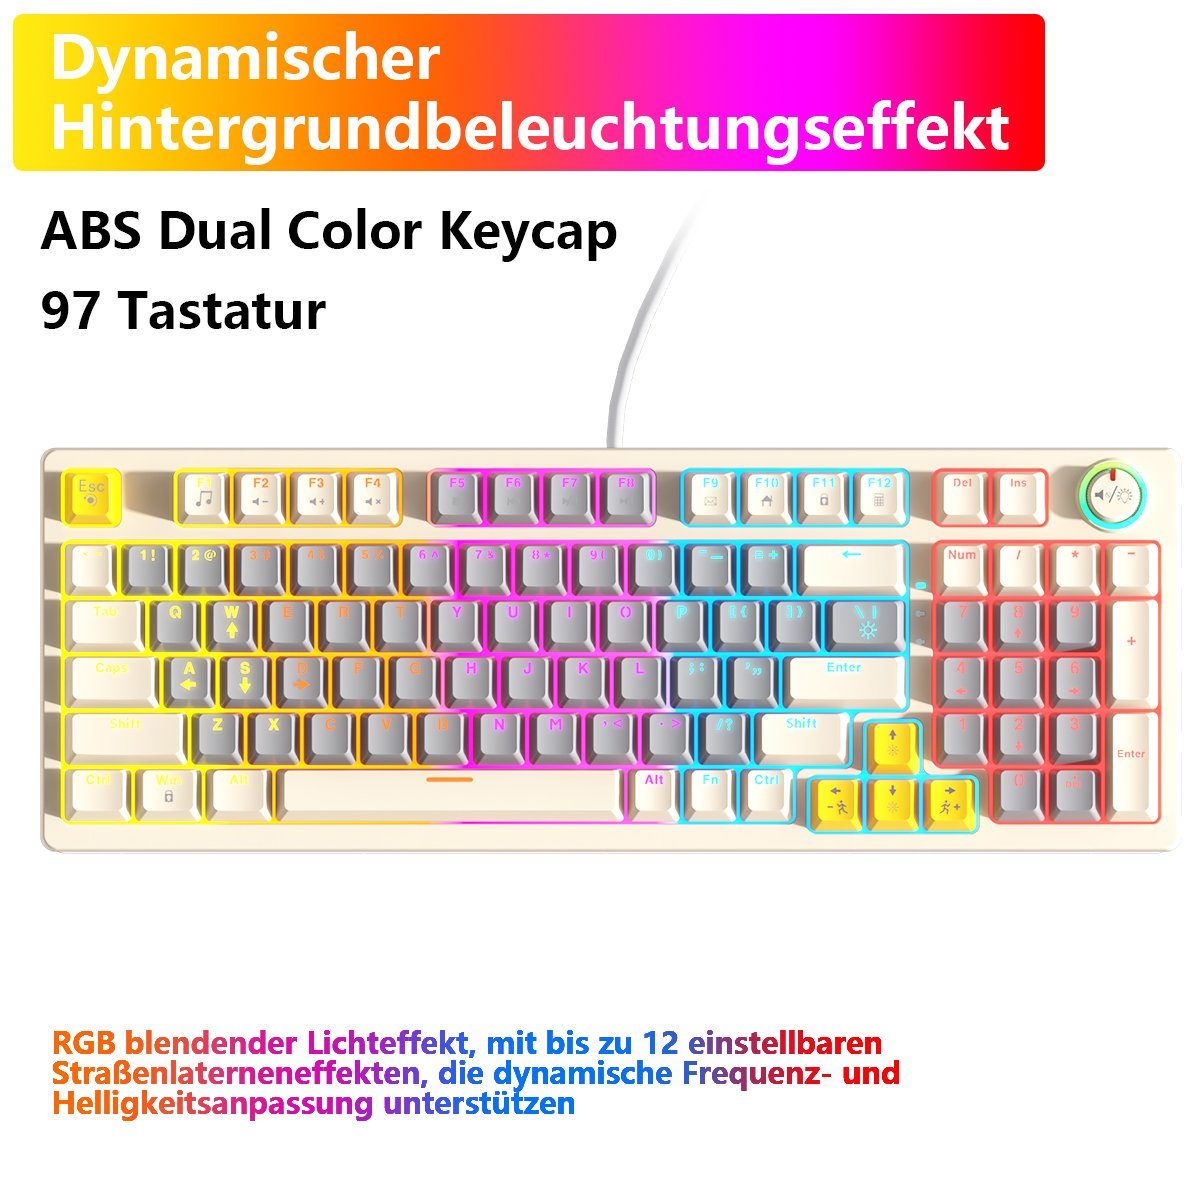 BUMHUM Nicht deutsche Tastatur Echte (Zweifarbige Gaming-Tastatur Weiß Tastatur,RGB-Beleuchtung RGB-Gaming-Tastatur Kabe) mechanische und Dreifarbige mit Doppel